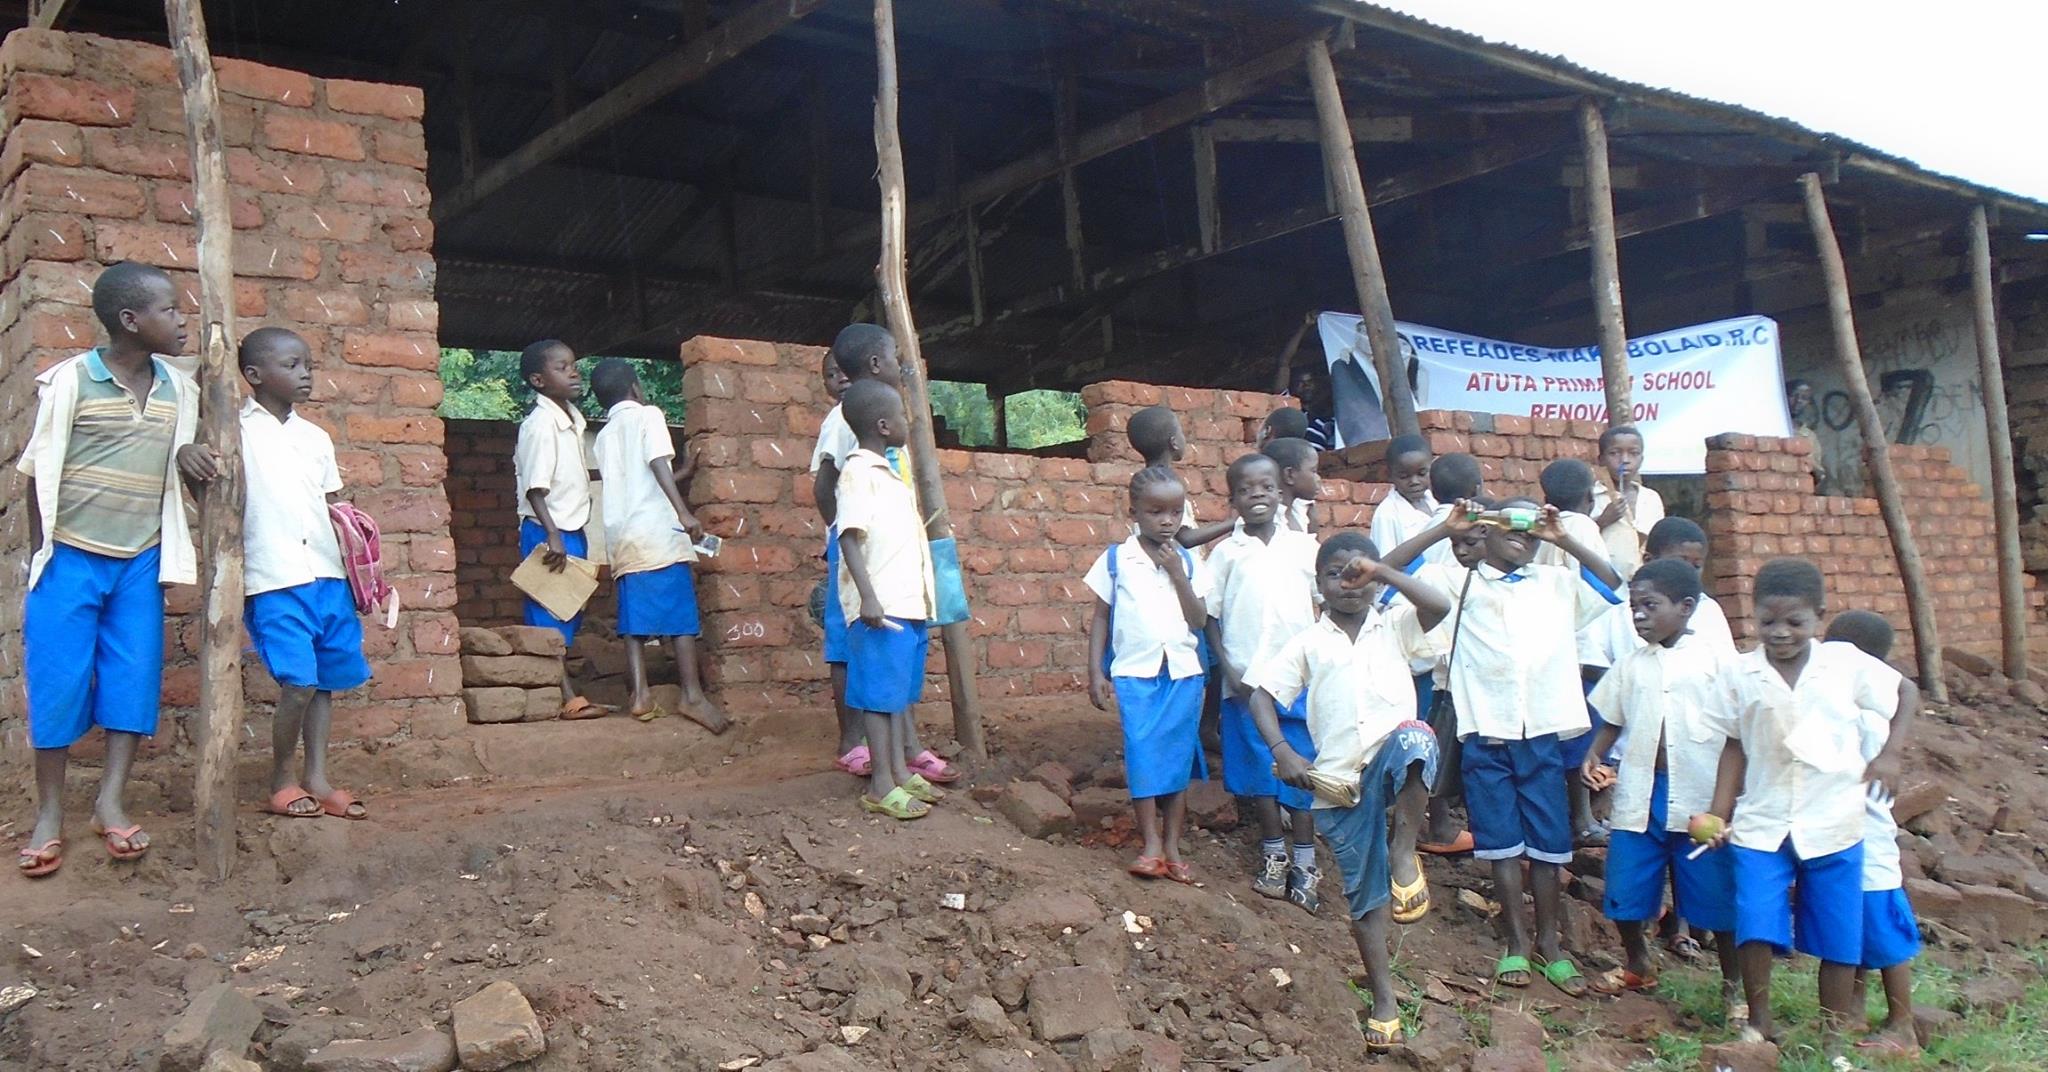   DEMOCRATIC REPUBLIC OF THE CONGO: REBUILDING A SCHOOL  